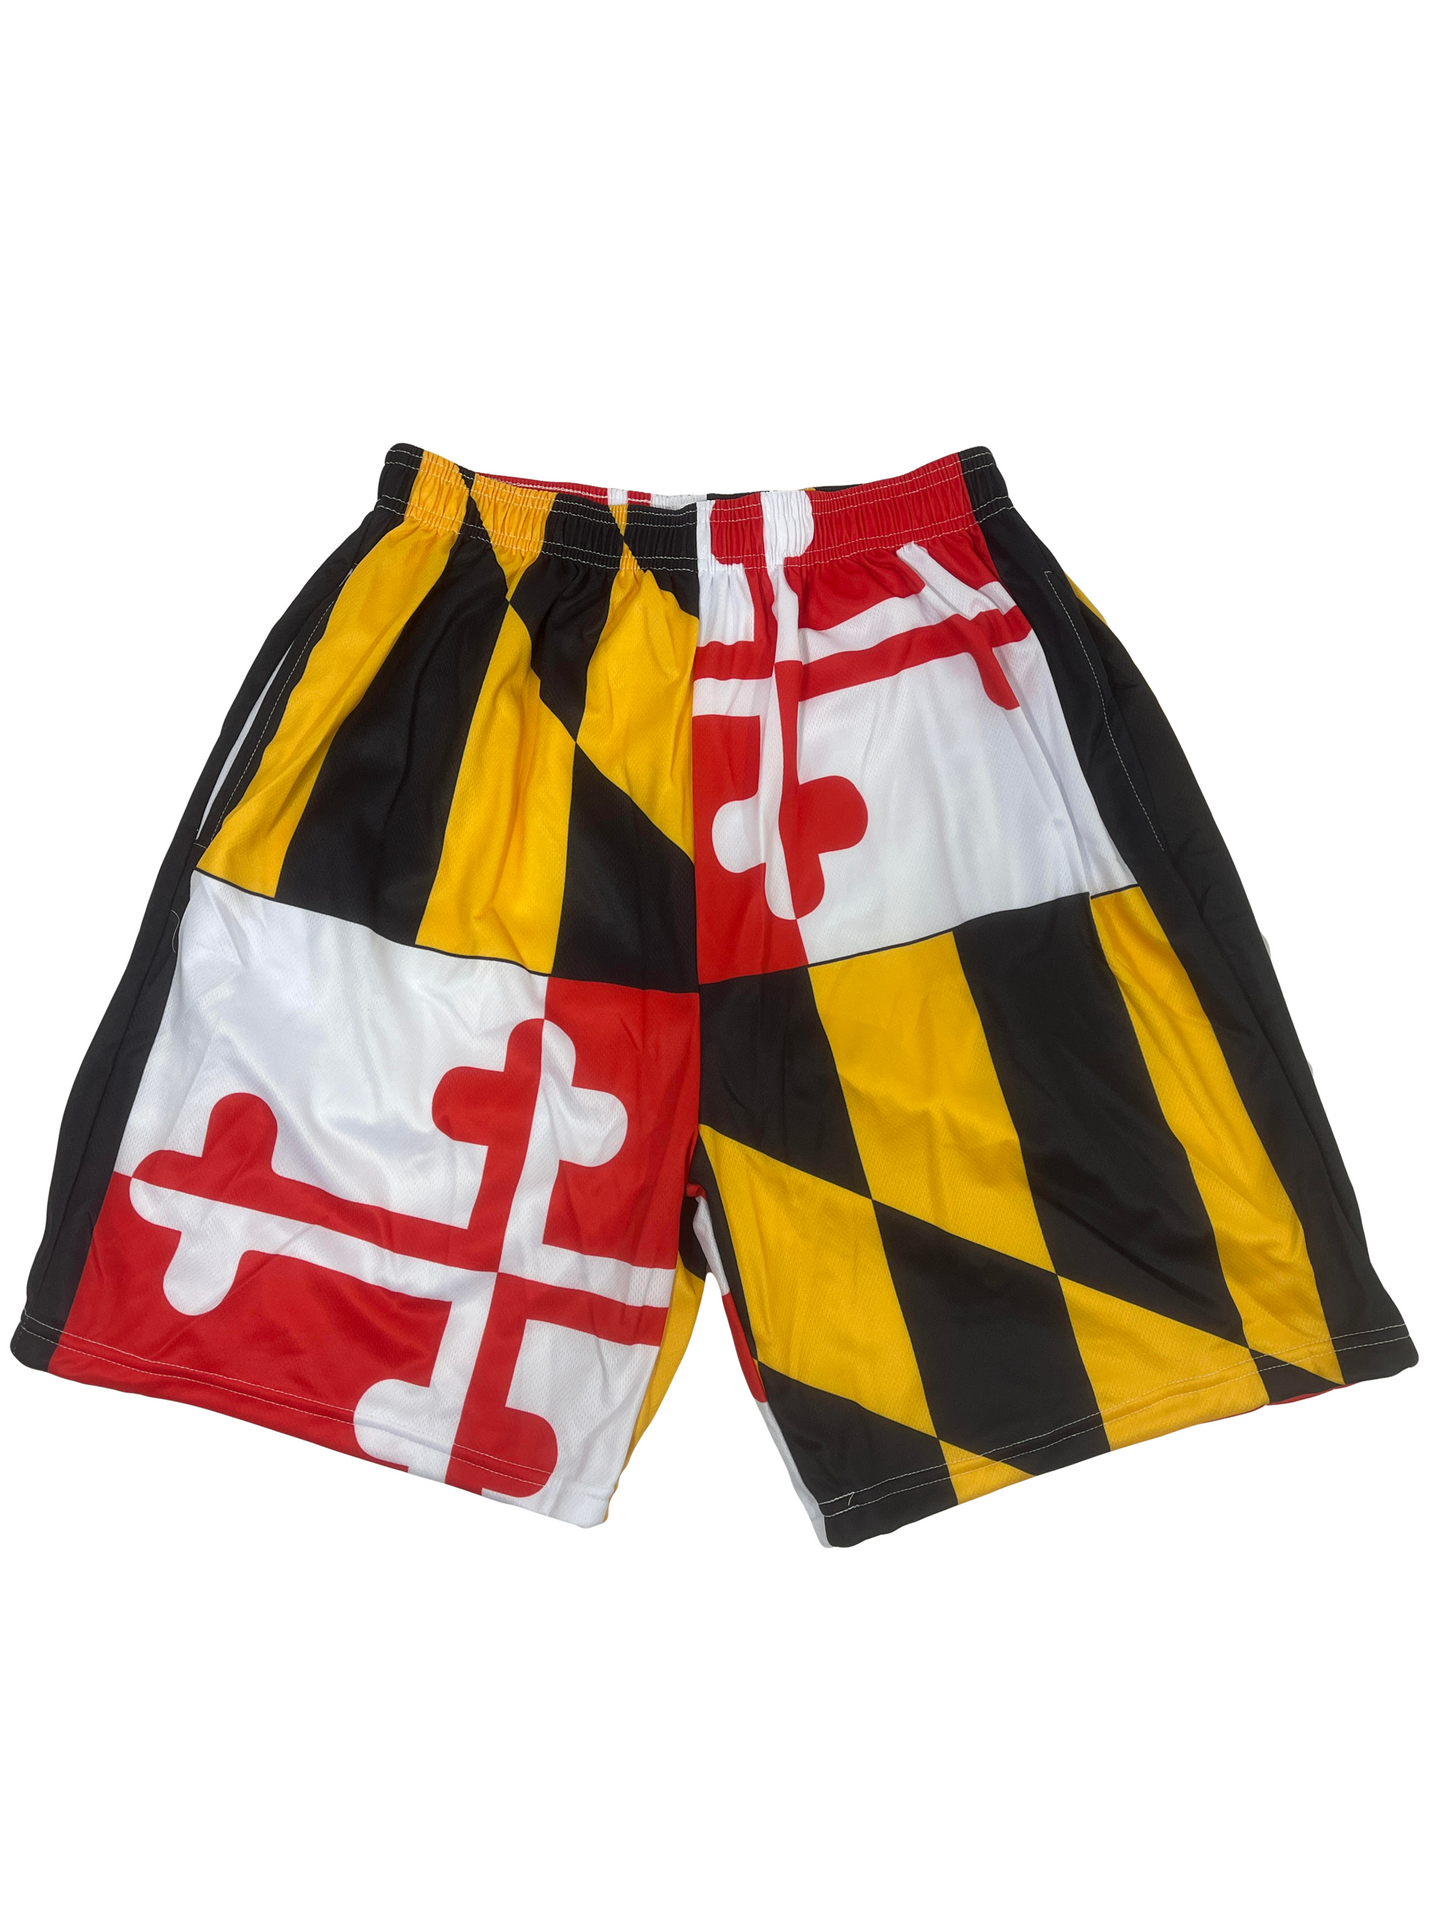 Maryland Flag Men's Shorts